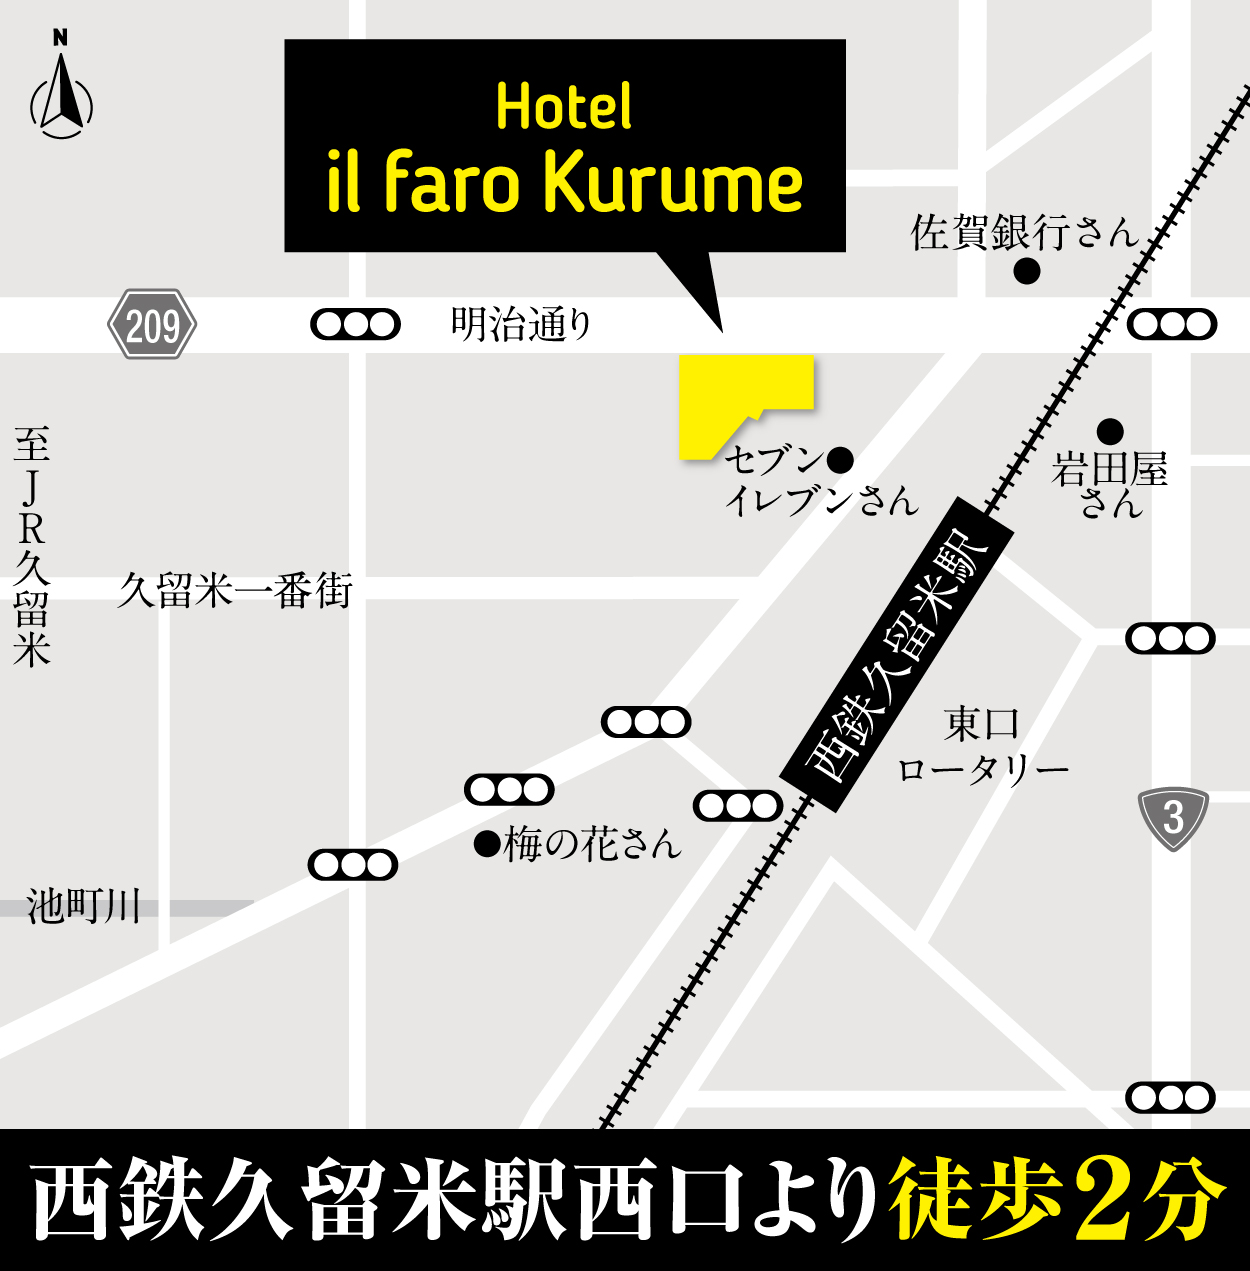 Hostel Il Faro Kurume